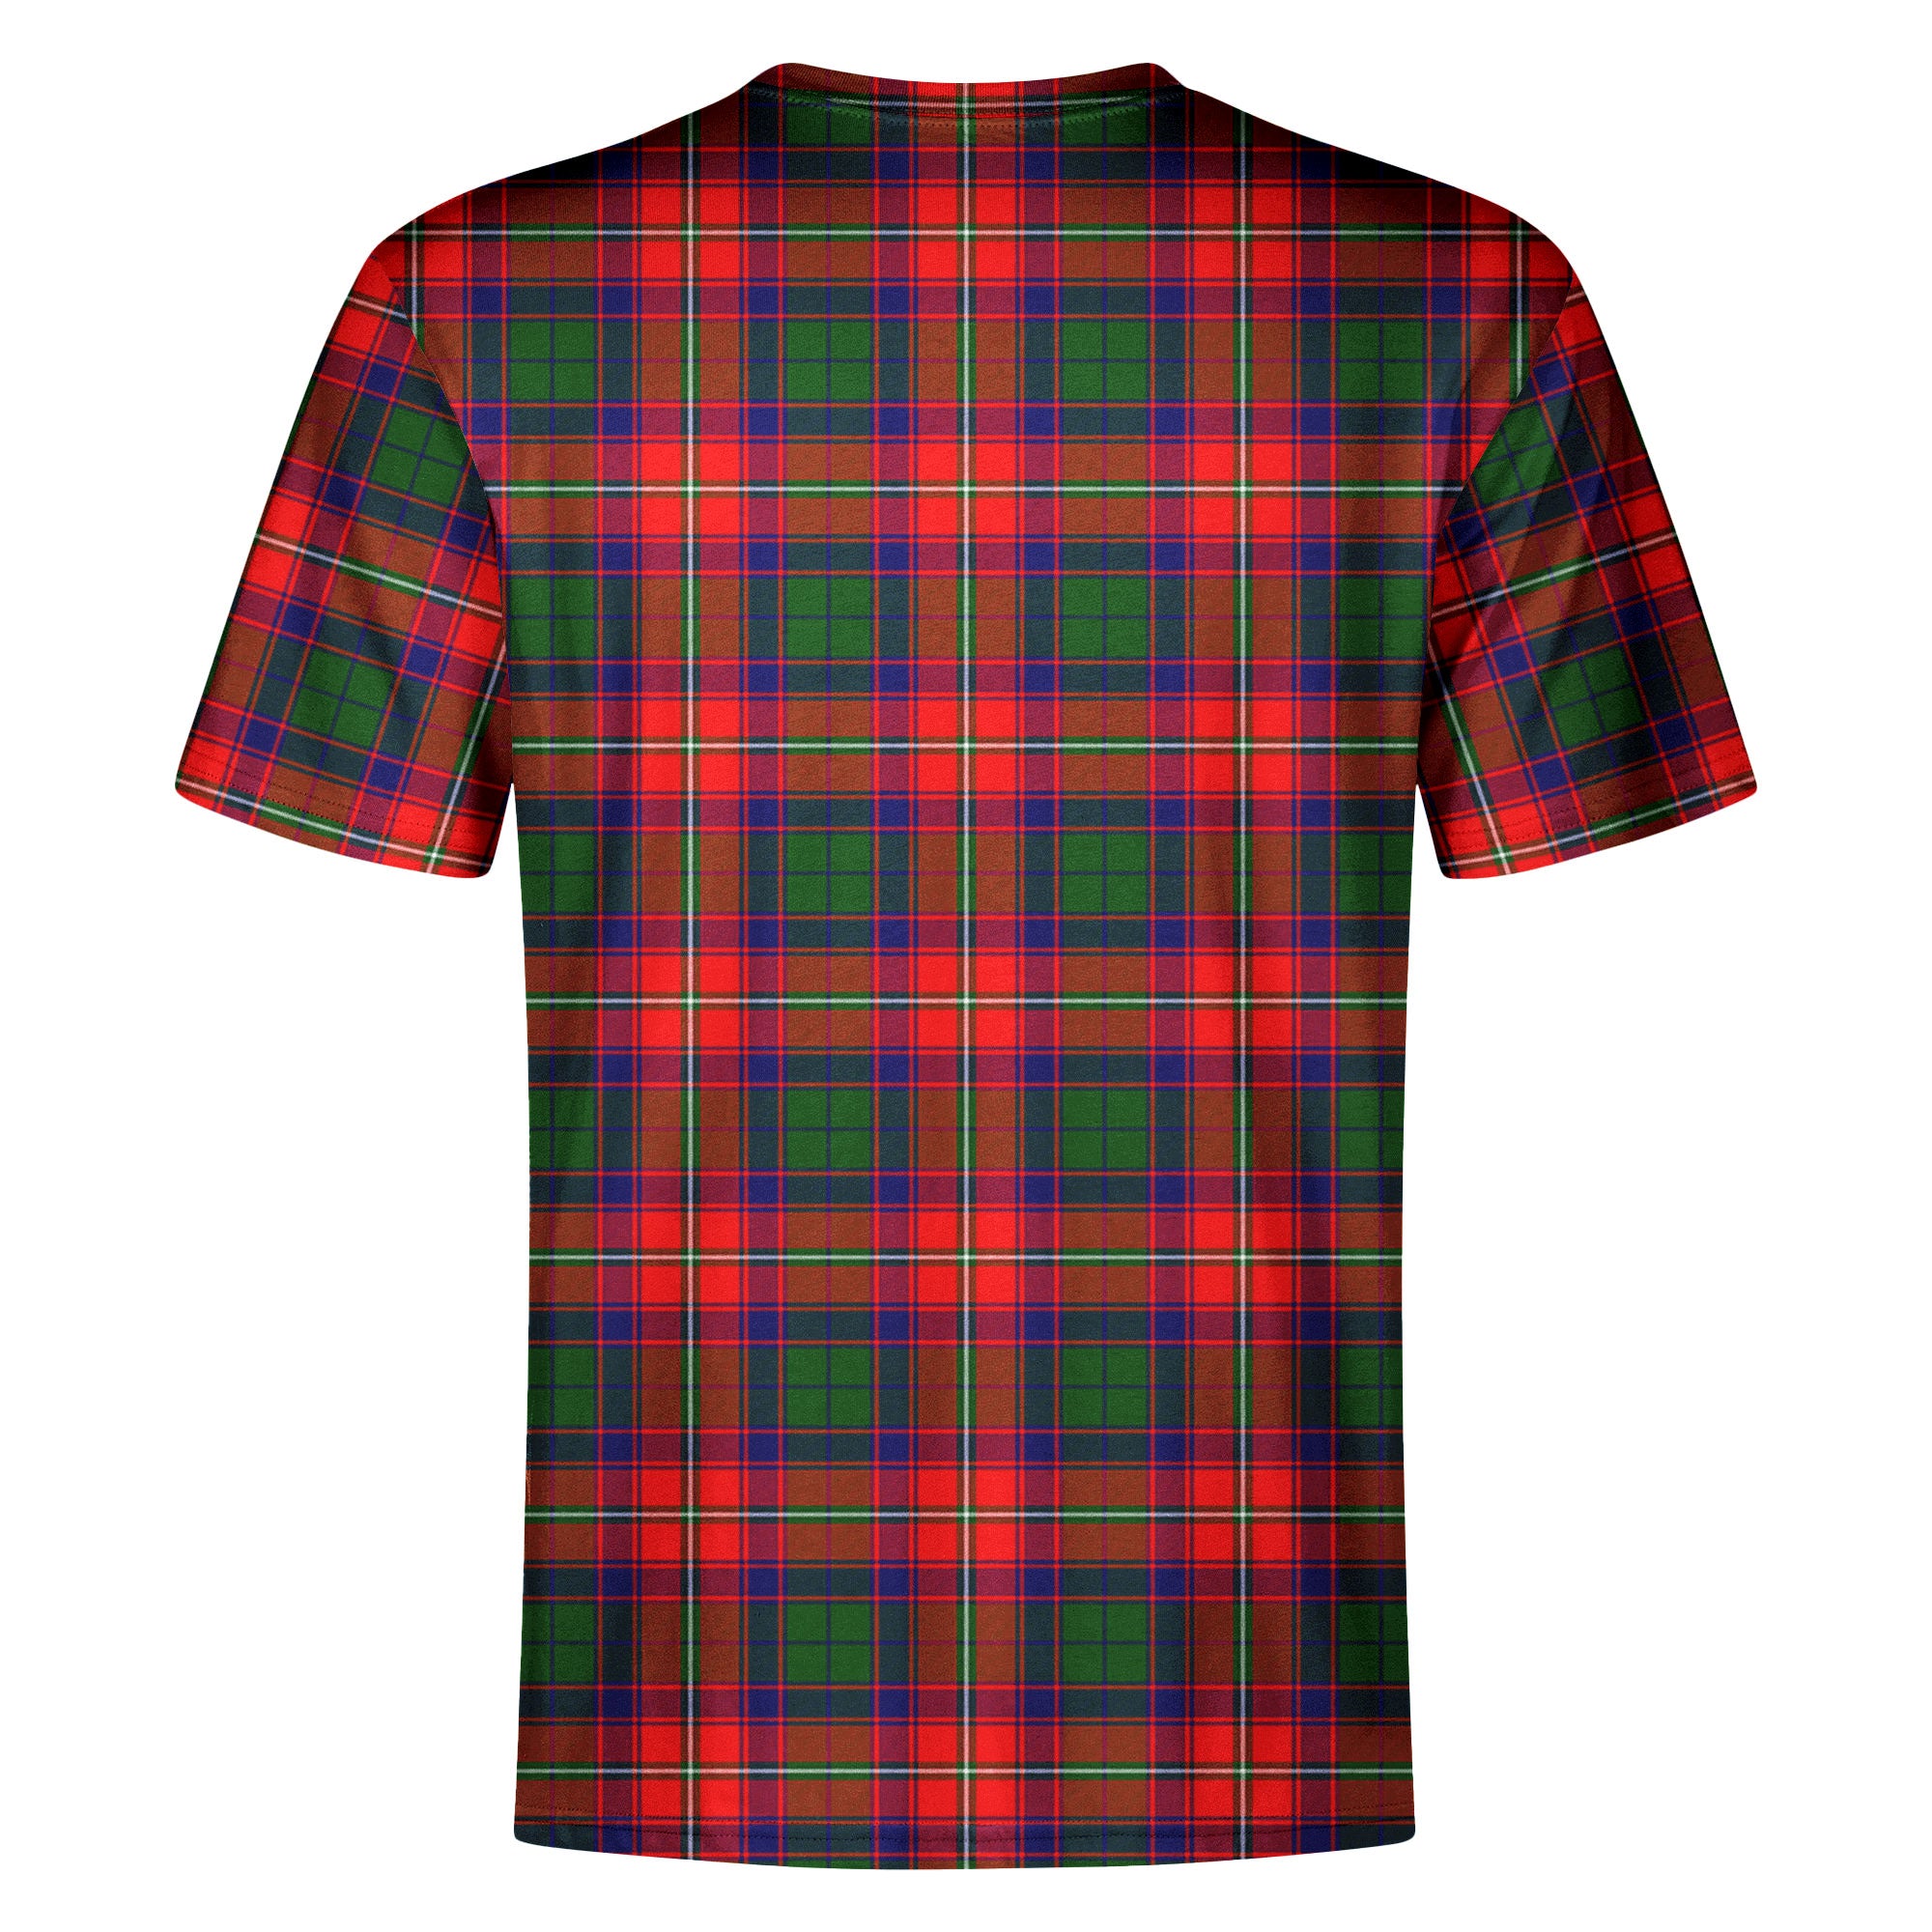 Charteris (Earl of Wemyss) Tartan Crest T-shirt